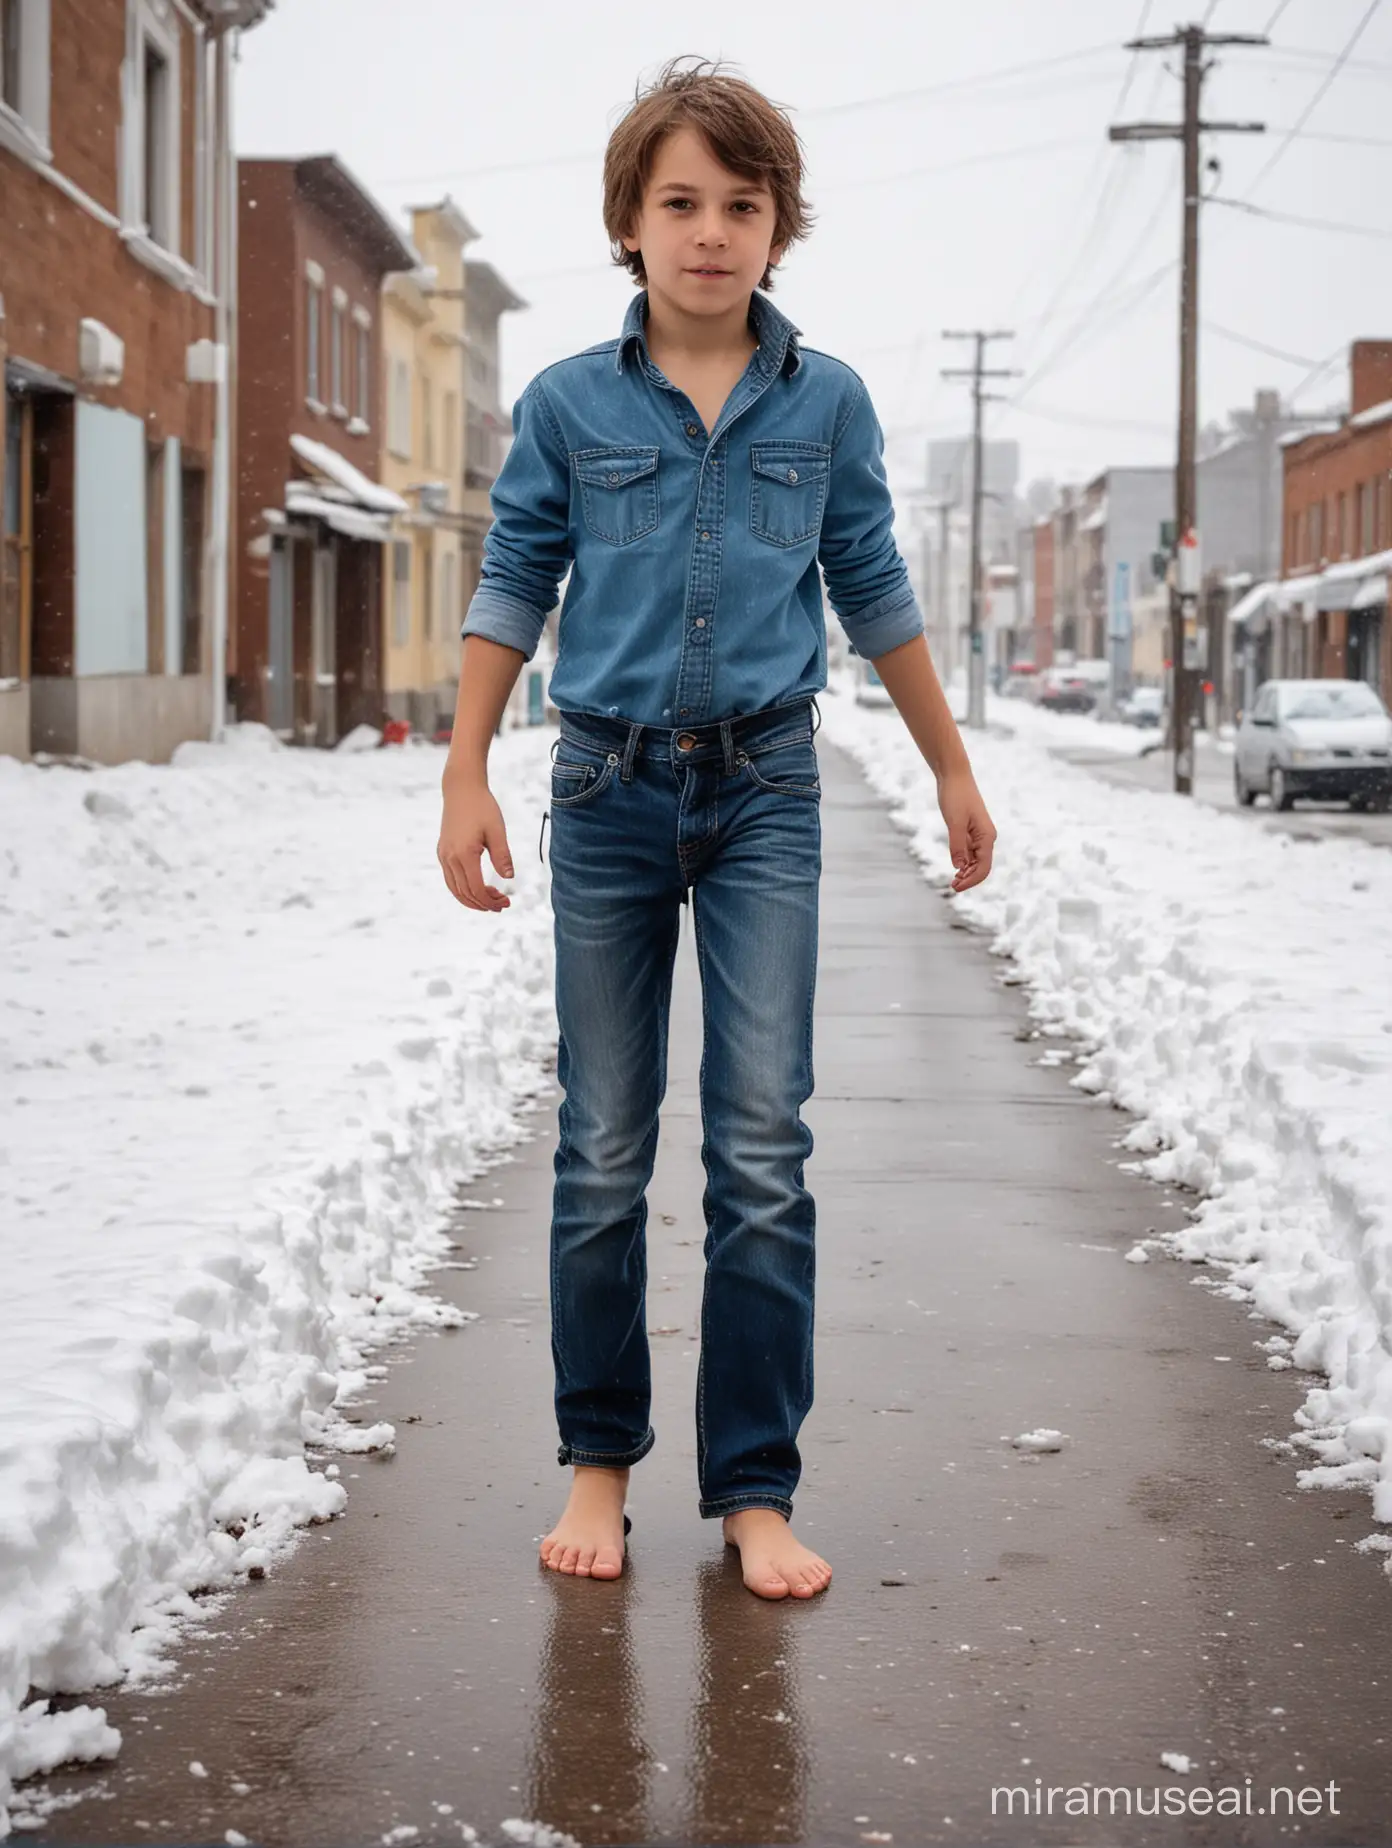 Босиком молодой Мальчик 10 лет русые волосы босые ноги джинсы босиком по снегу город